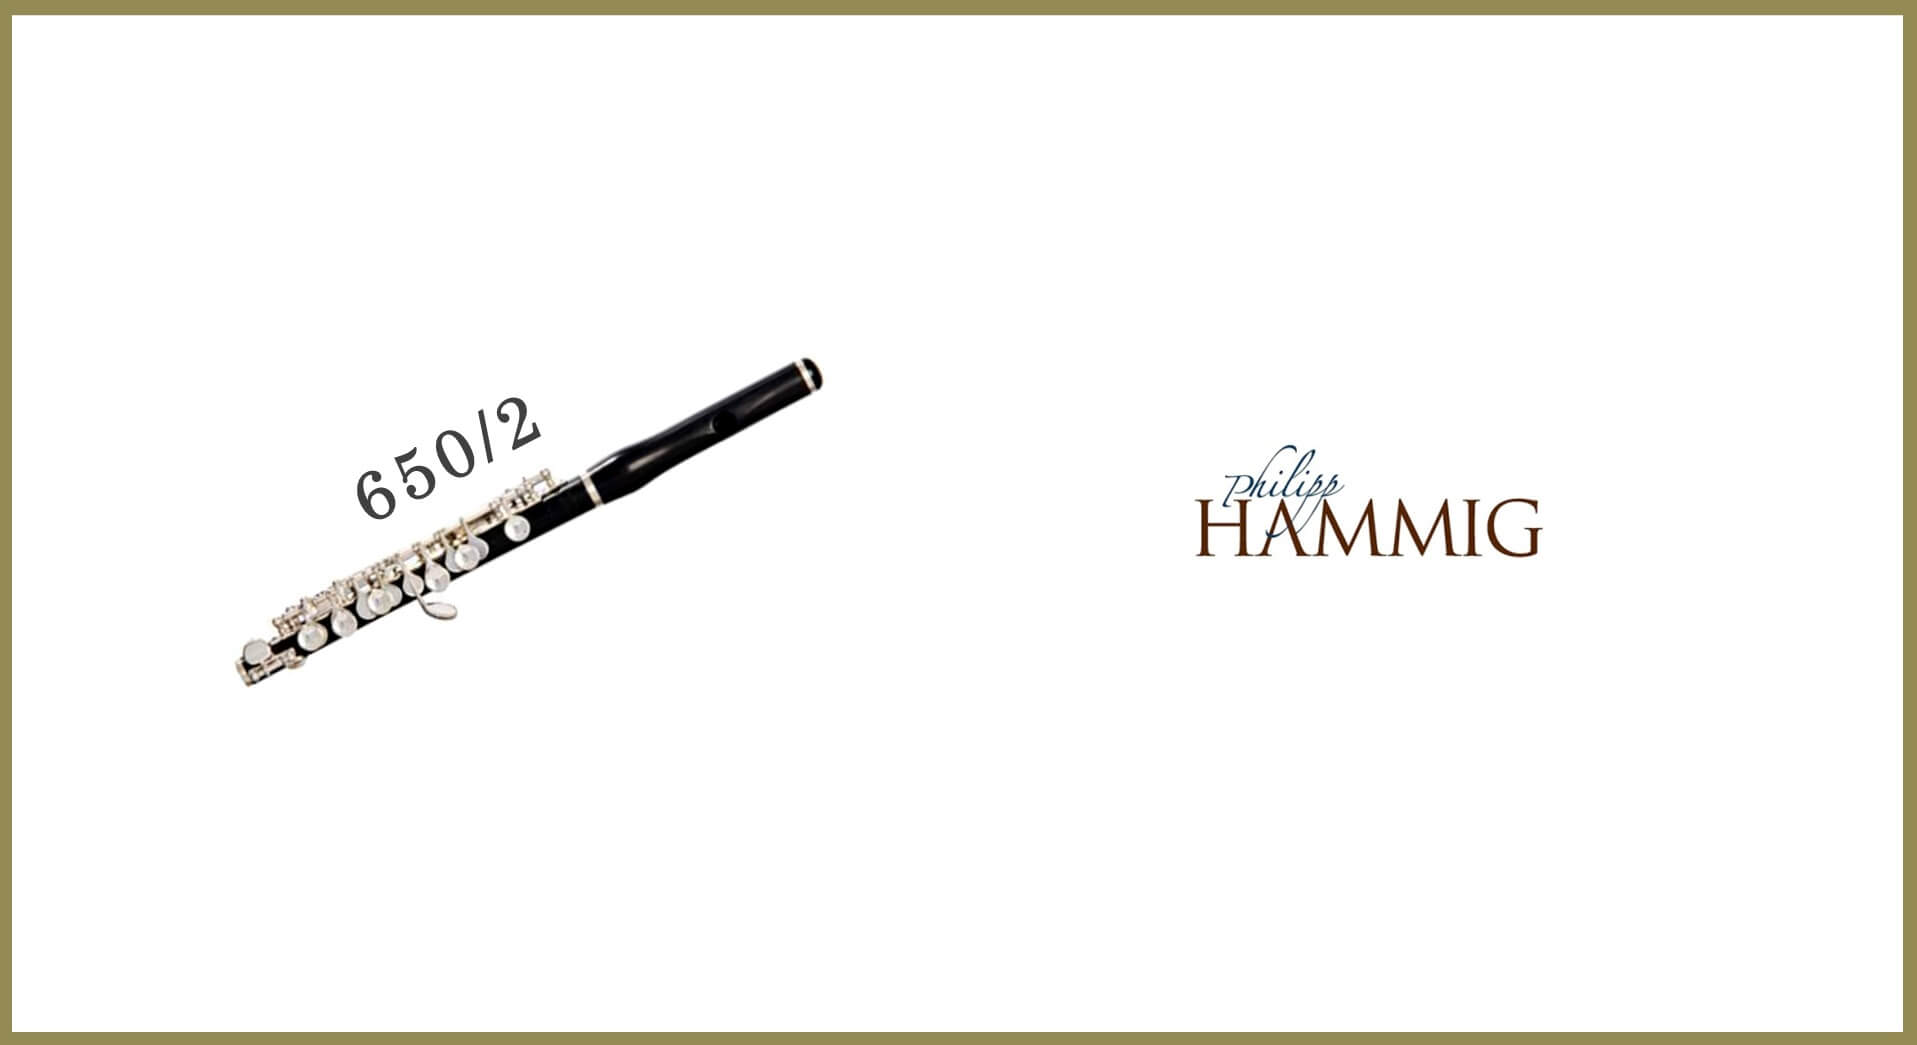 HAMMIG 650/2